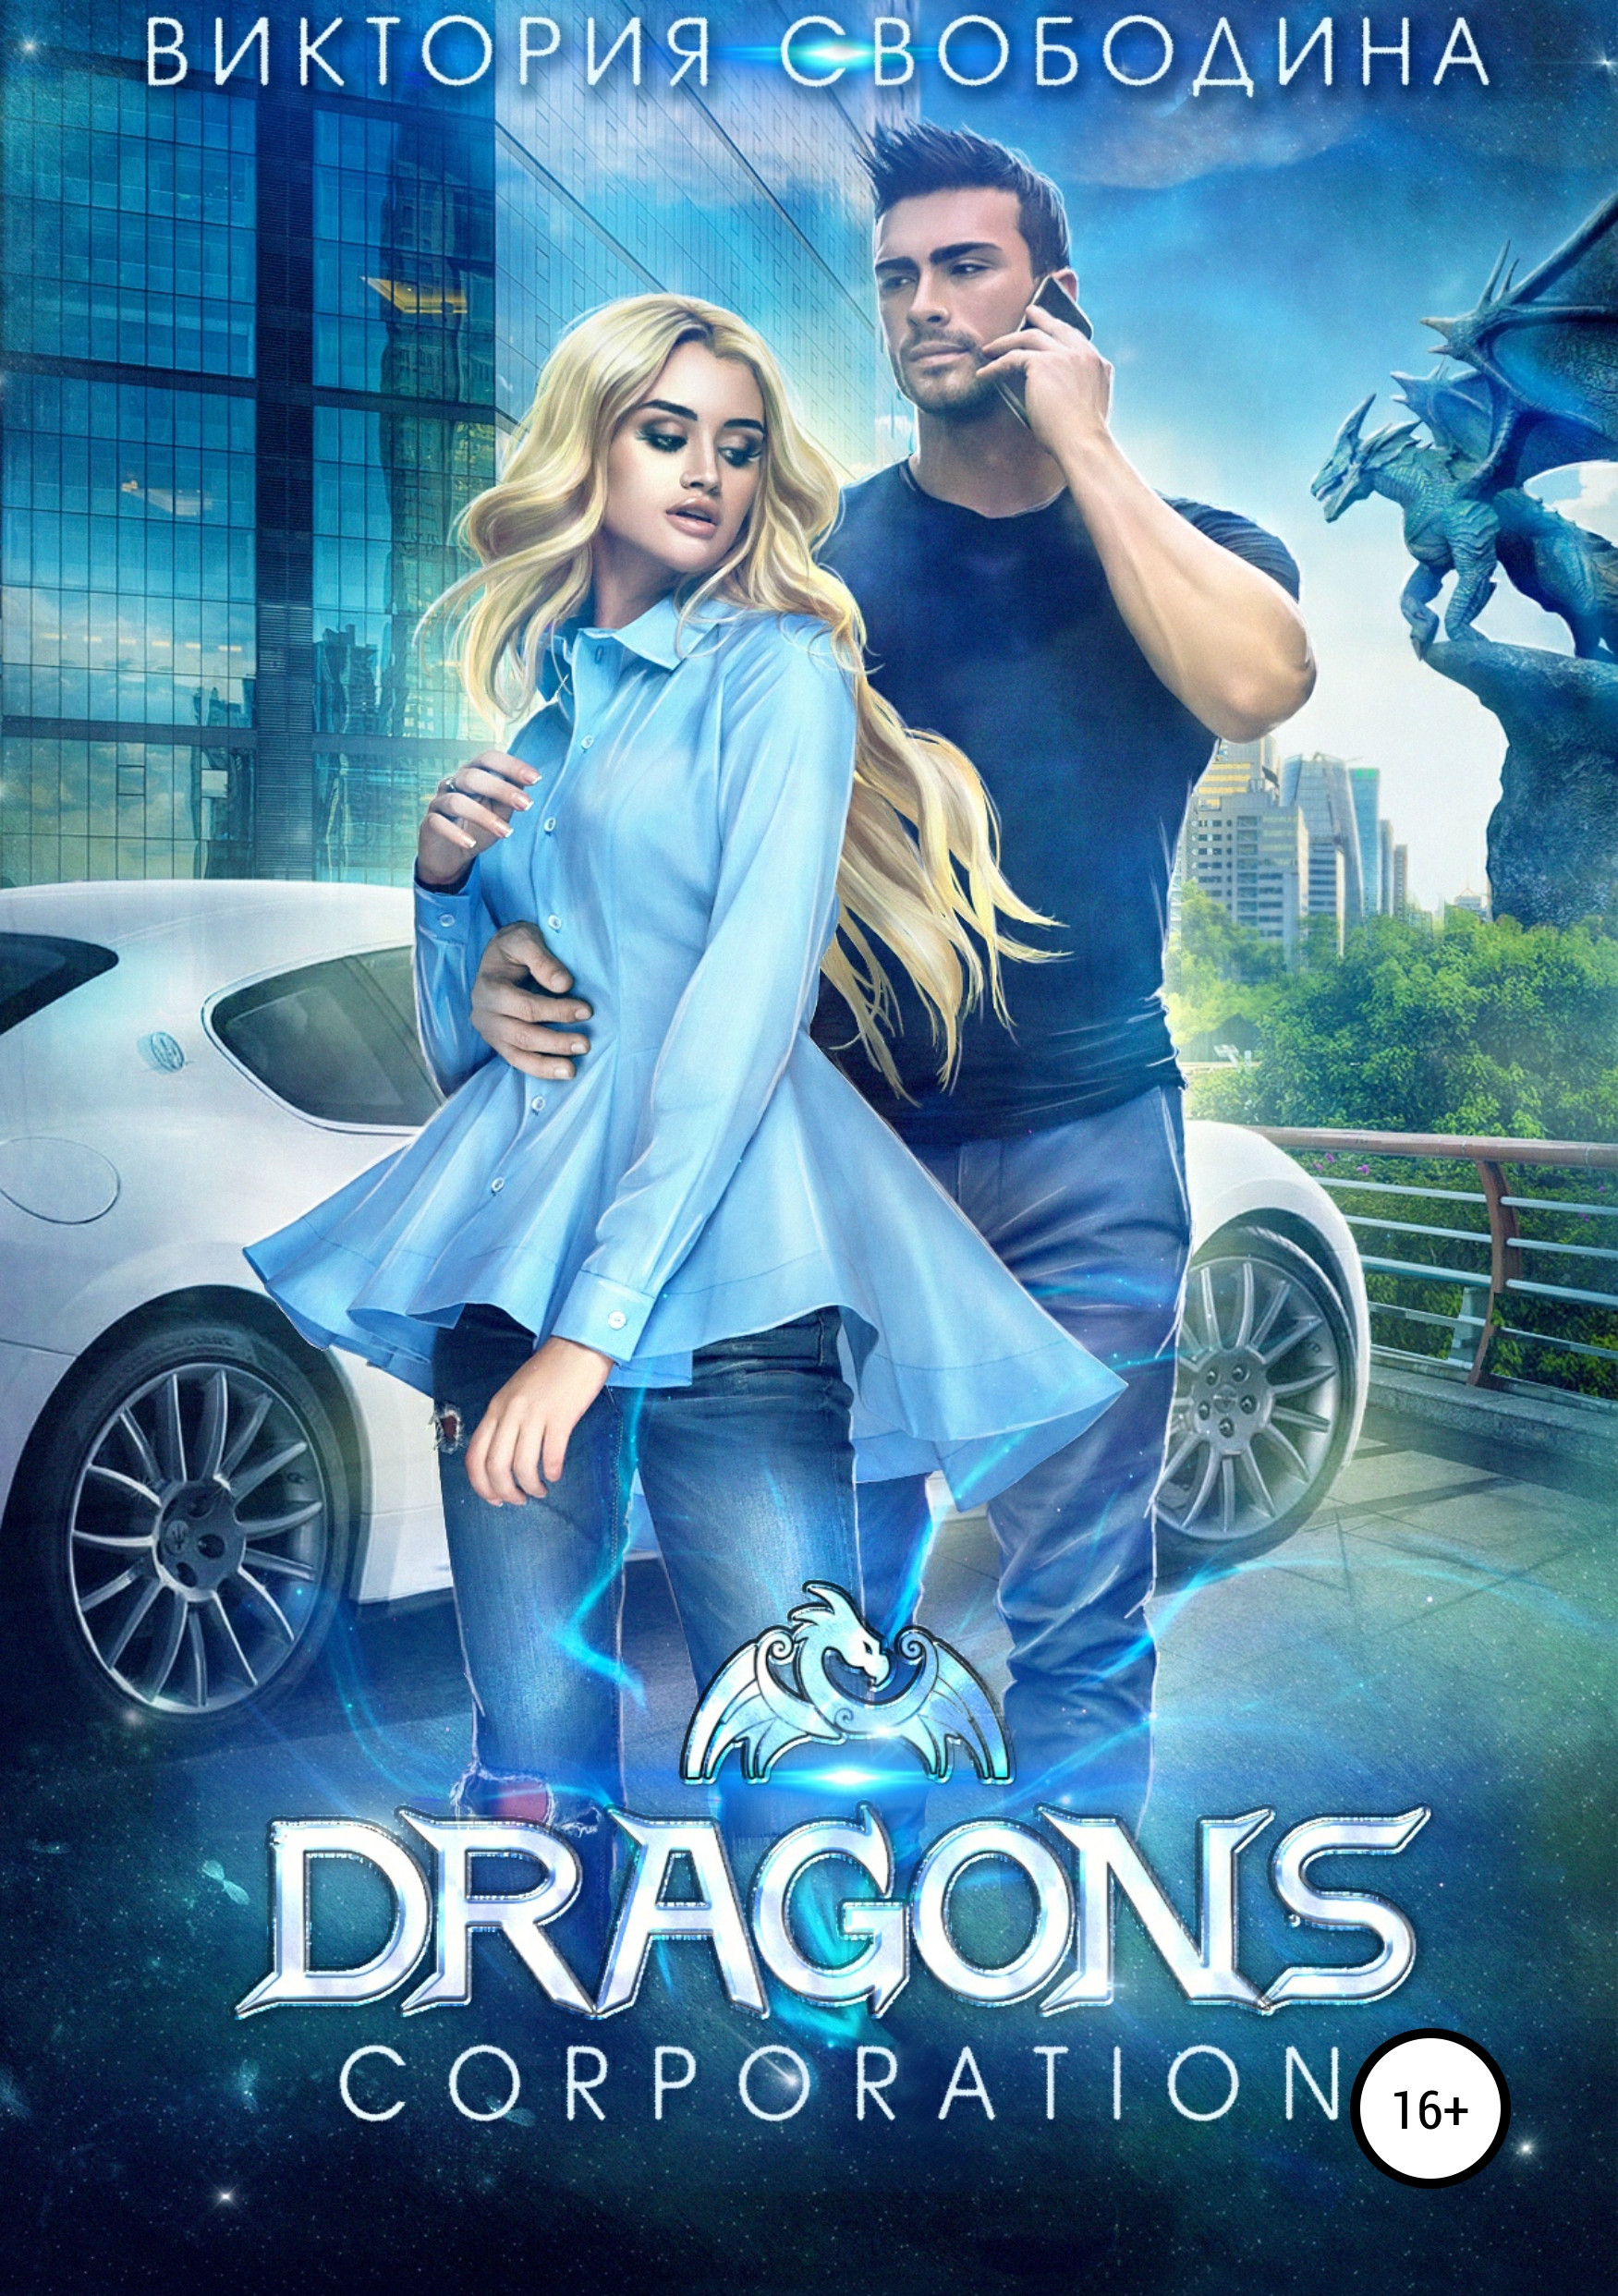 Скачать Dragons corporation - Виктория Свободина